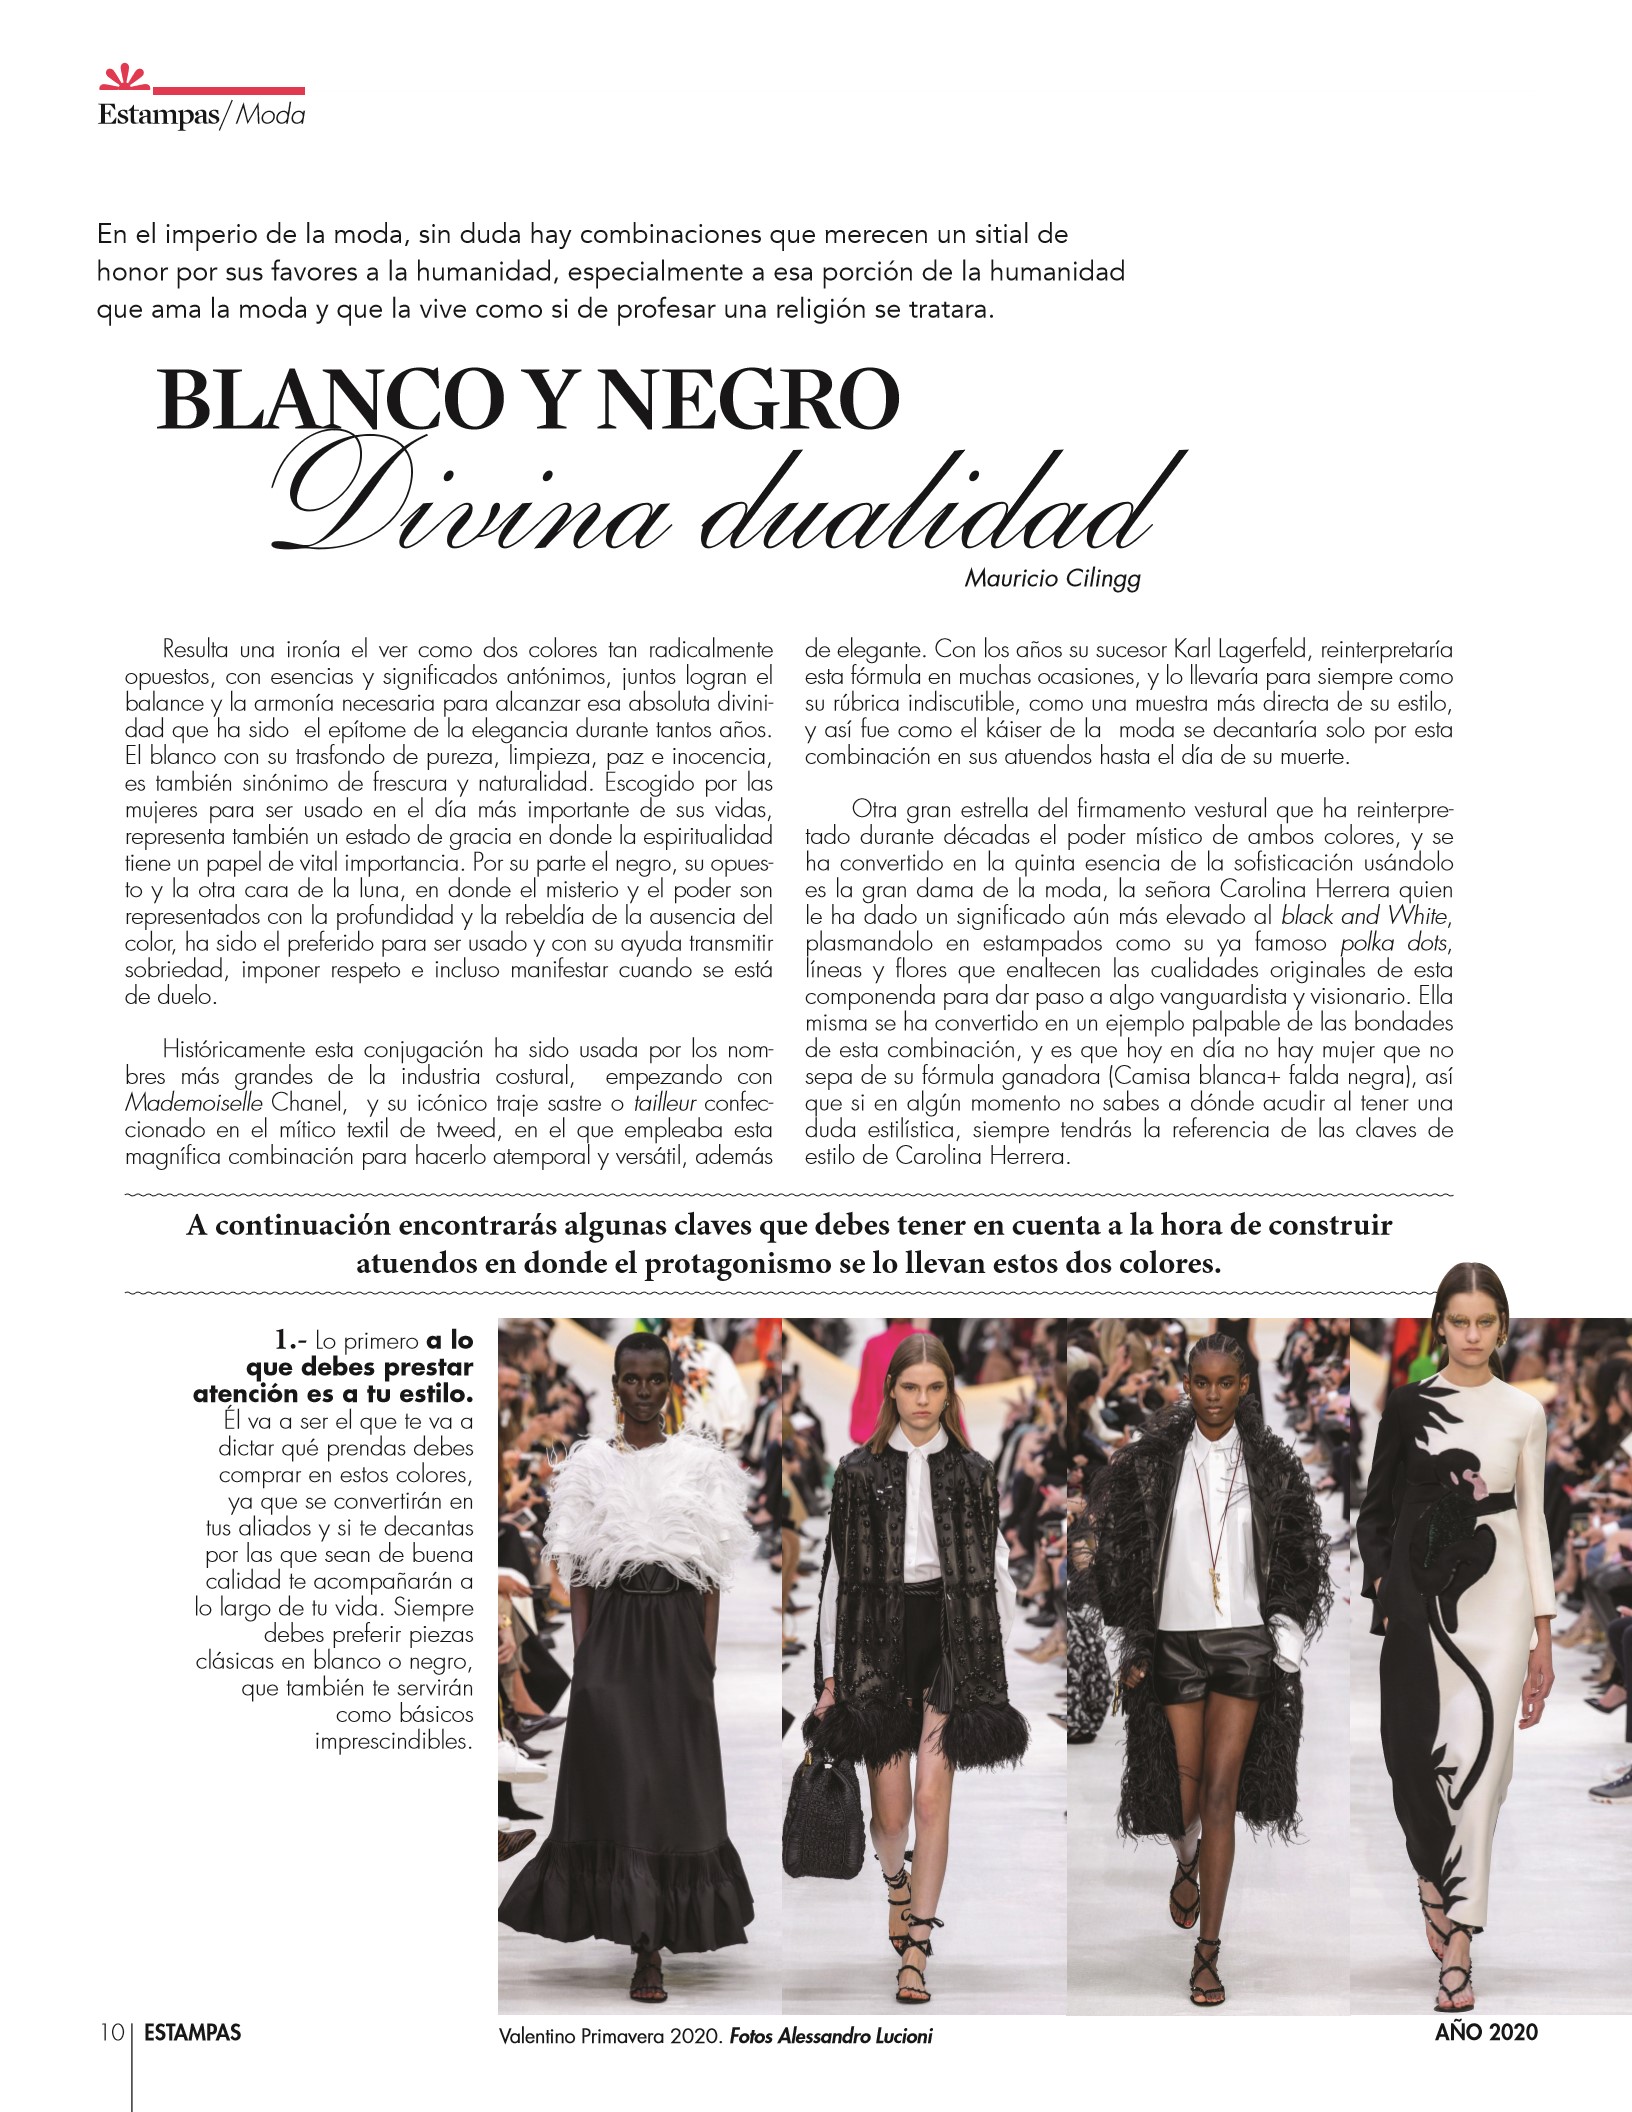 10-REV Moda:  Mauricio Cilingg  - Blanco y negro: Divina dualidad